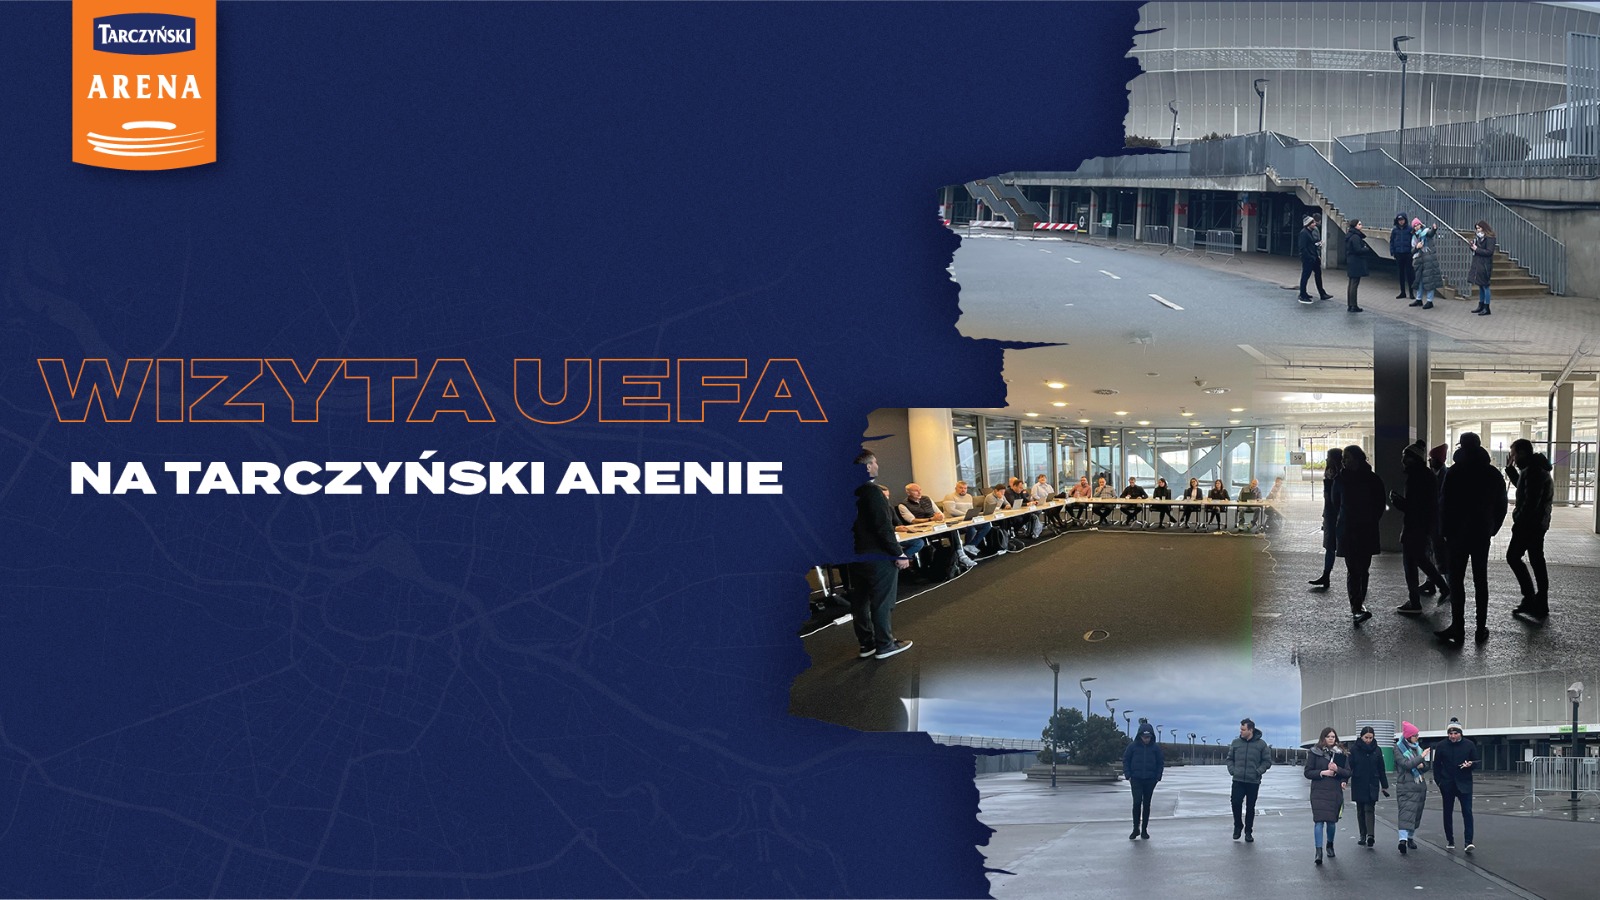 Wizyta przedstawicieli UEFA i PZPN na Tarczyński Arenie